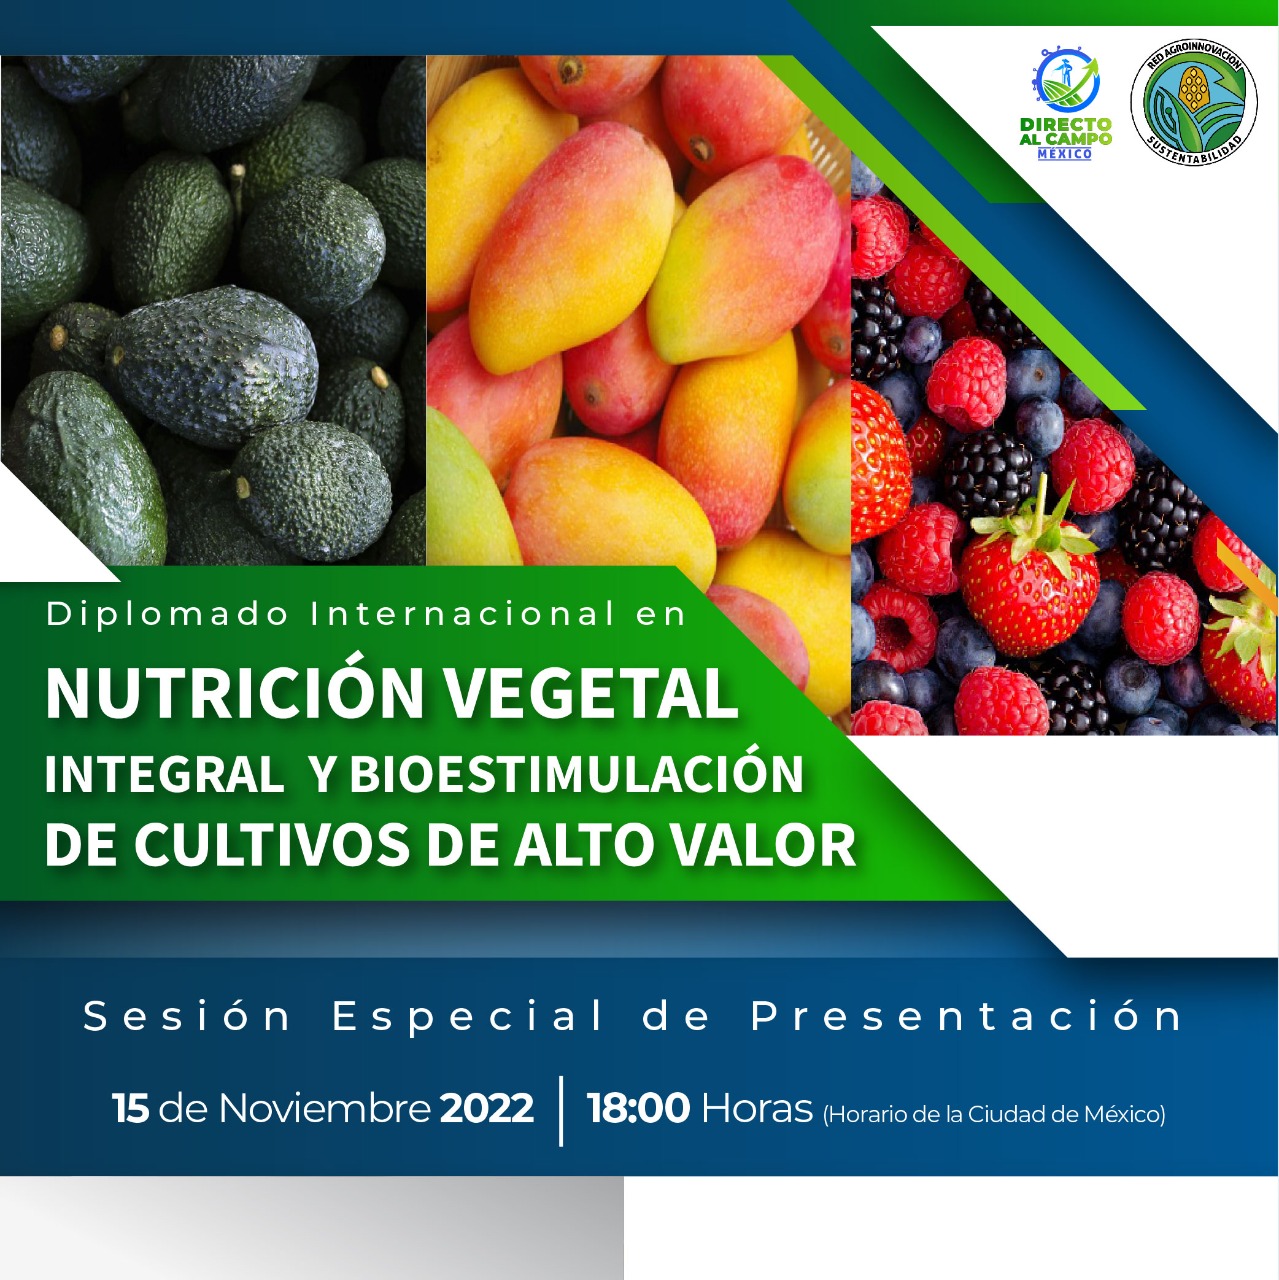 Nutrición Vegetal Integral y Bioestimulación de Cultivos de Alto Valor- Sesión informativa